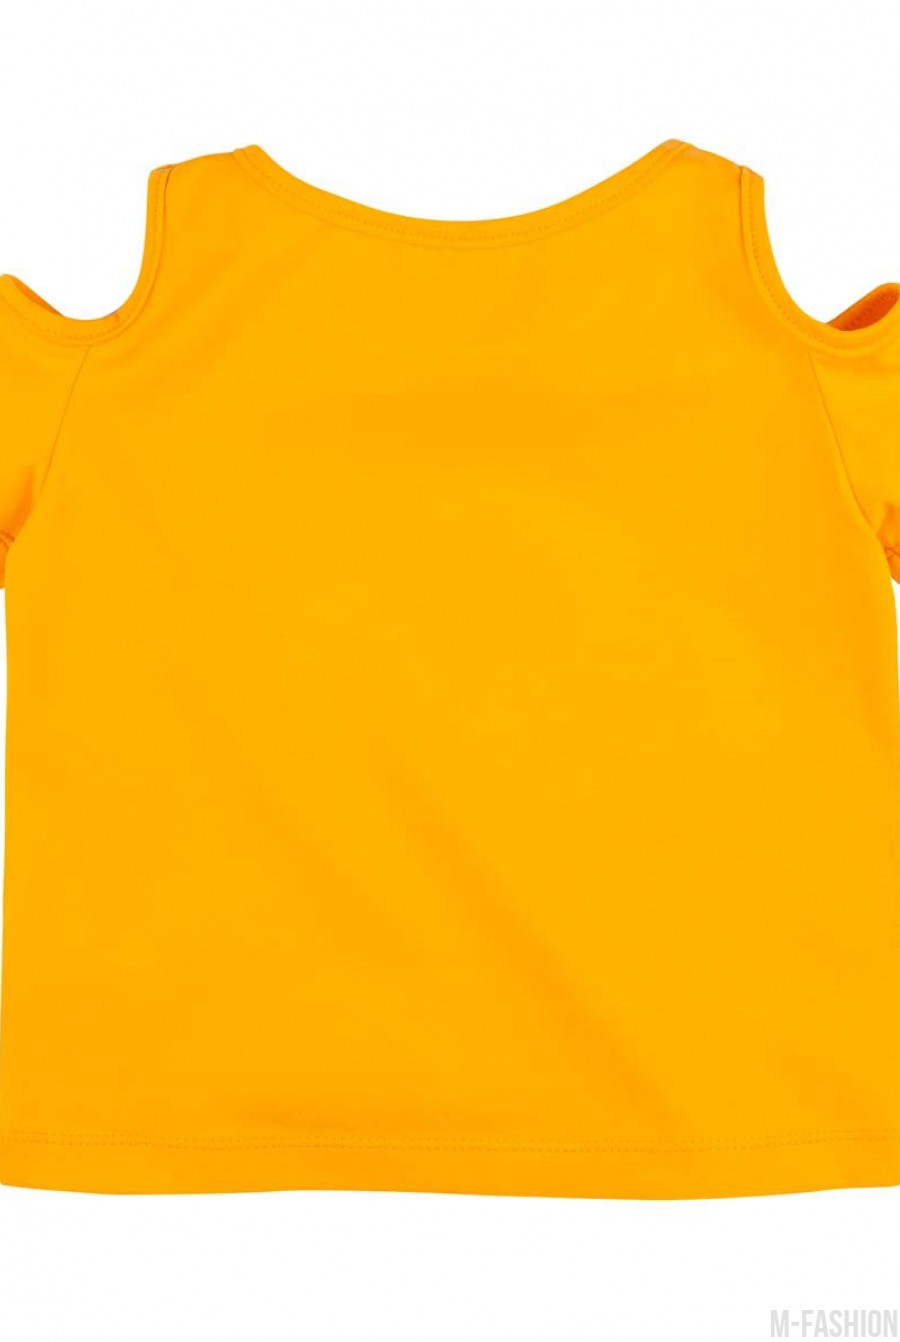 Трикотажная футболка с разрезами на плечах и с возможностью индивидуальной печати цифры (1-9) на принте- Фото 2